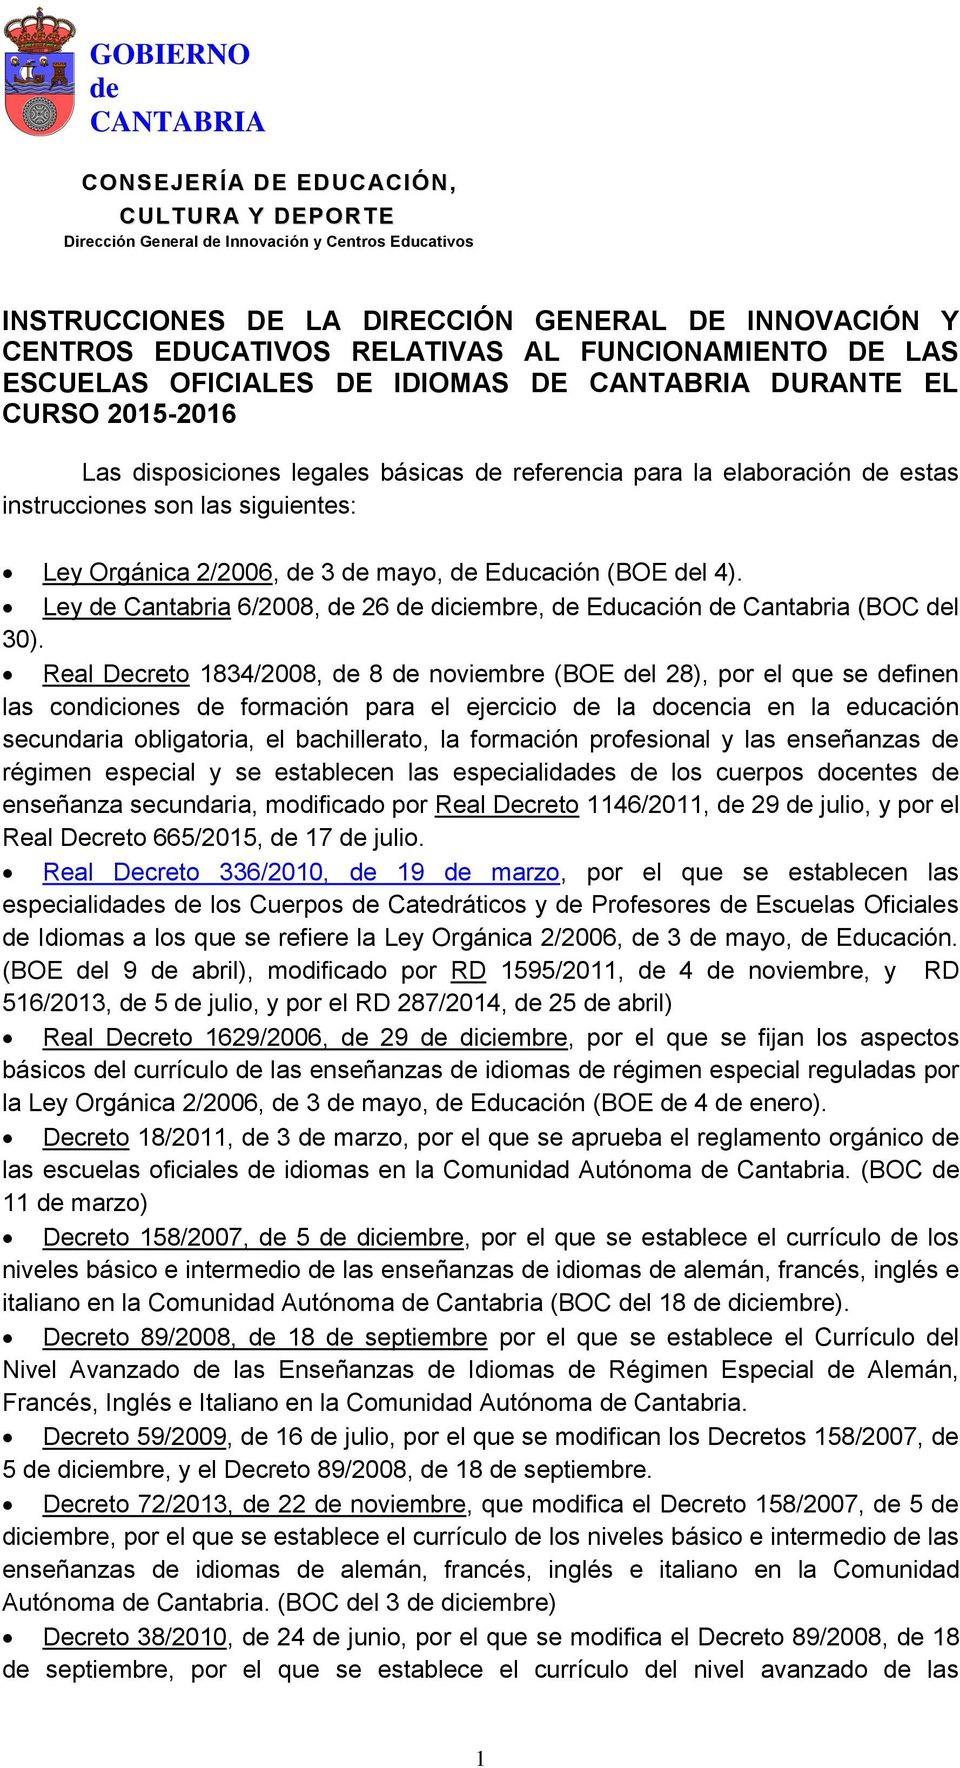 Real Decreto 1834/2008, 8 noviembre (BOE l 28), por el que se finen las condiciones formación para el ejercicio la docencia en la educación secundaria obligatoria, el bachillerato, la formación